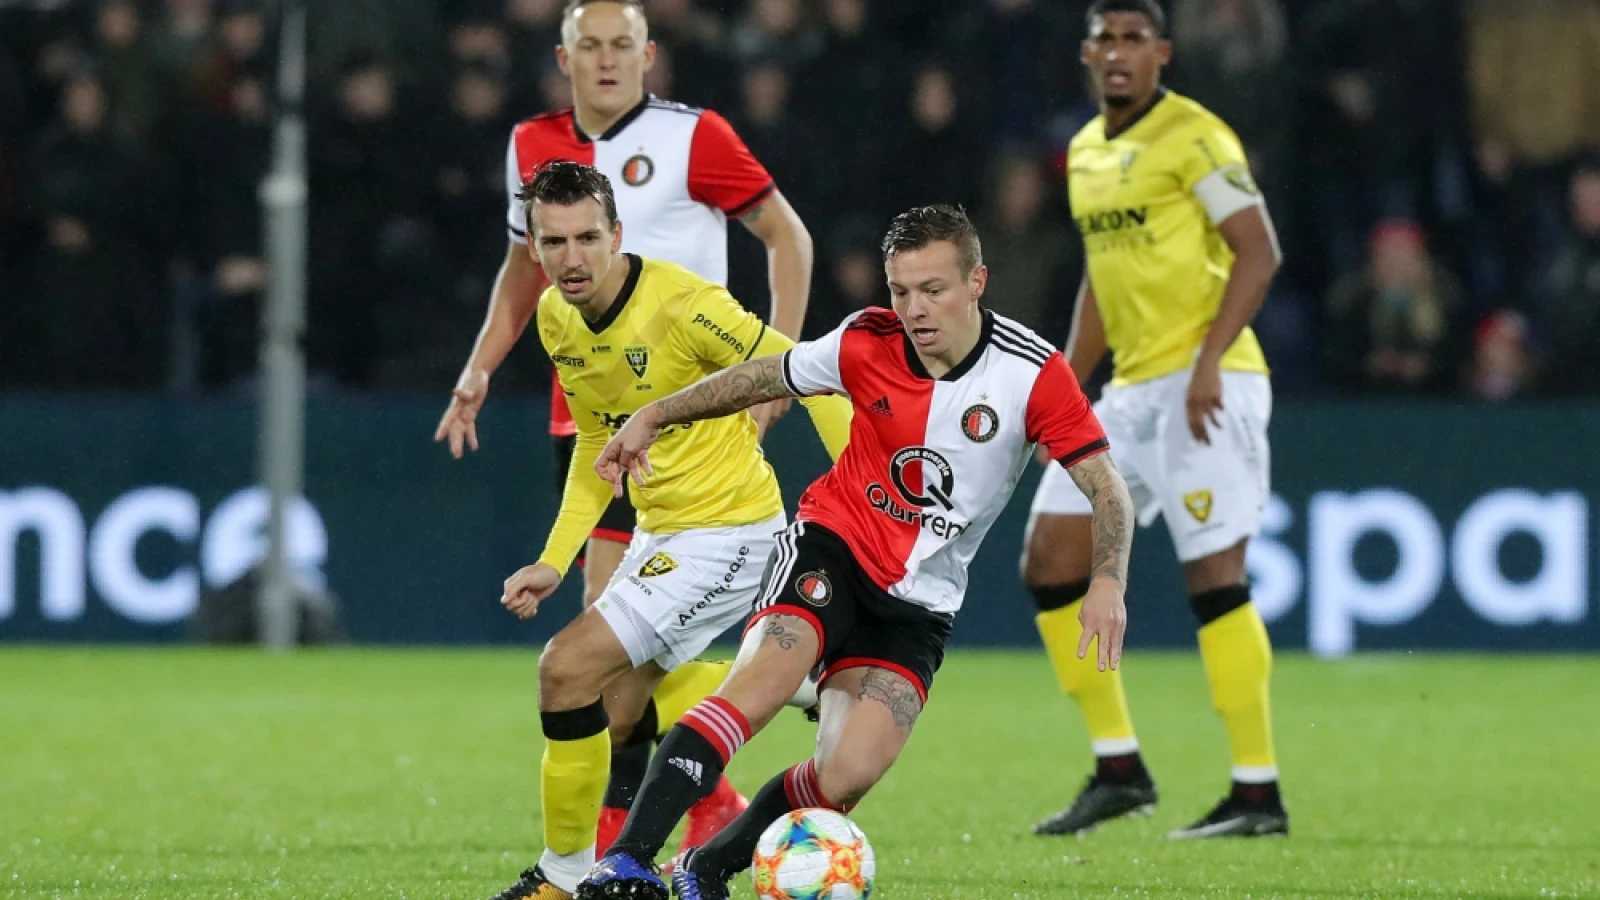 LIVE | Feyenoord - VVV-Venlo 4-1 | Einde wedstrijd